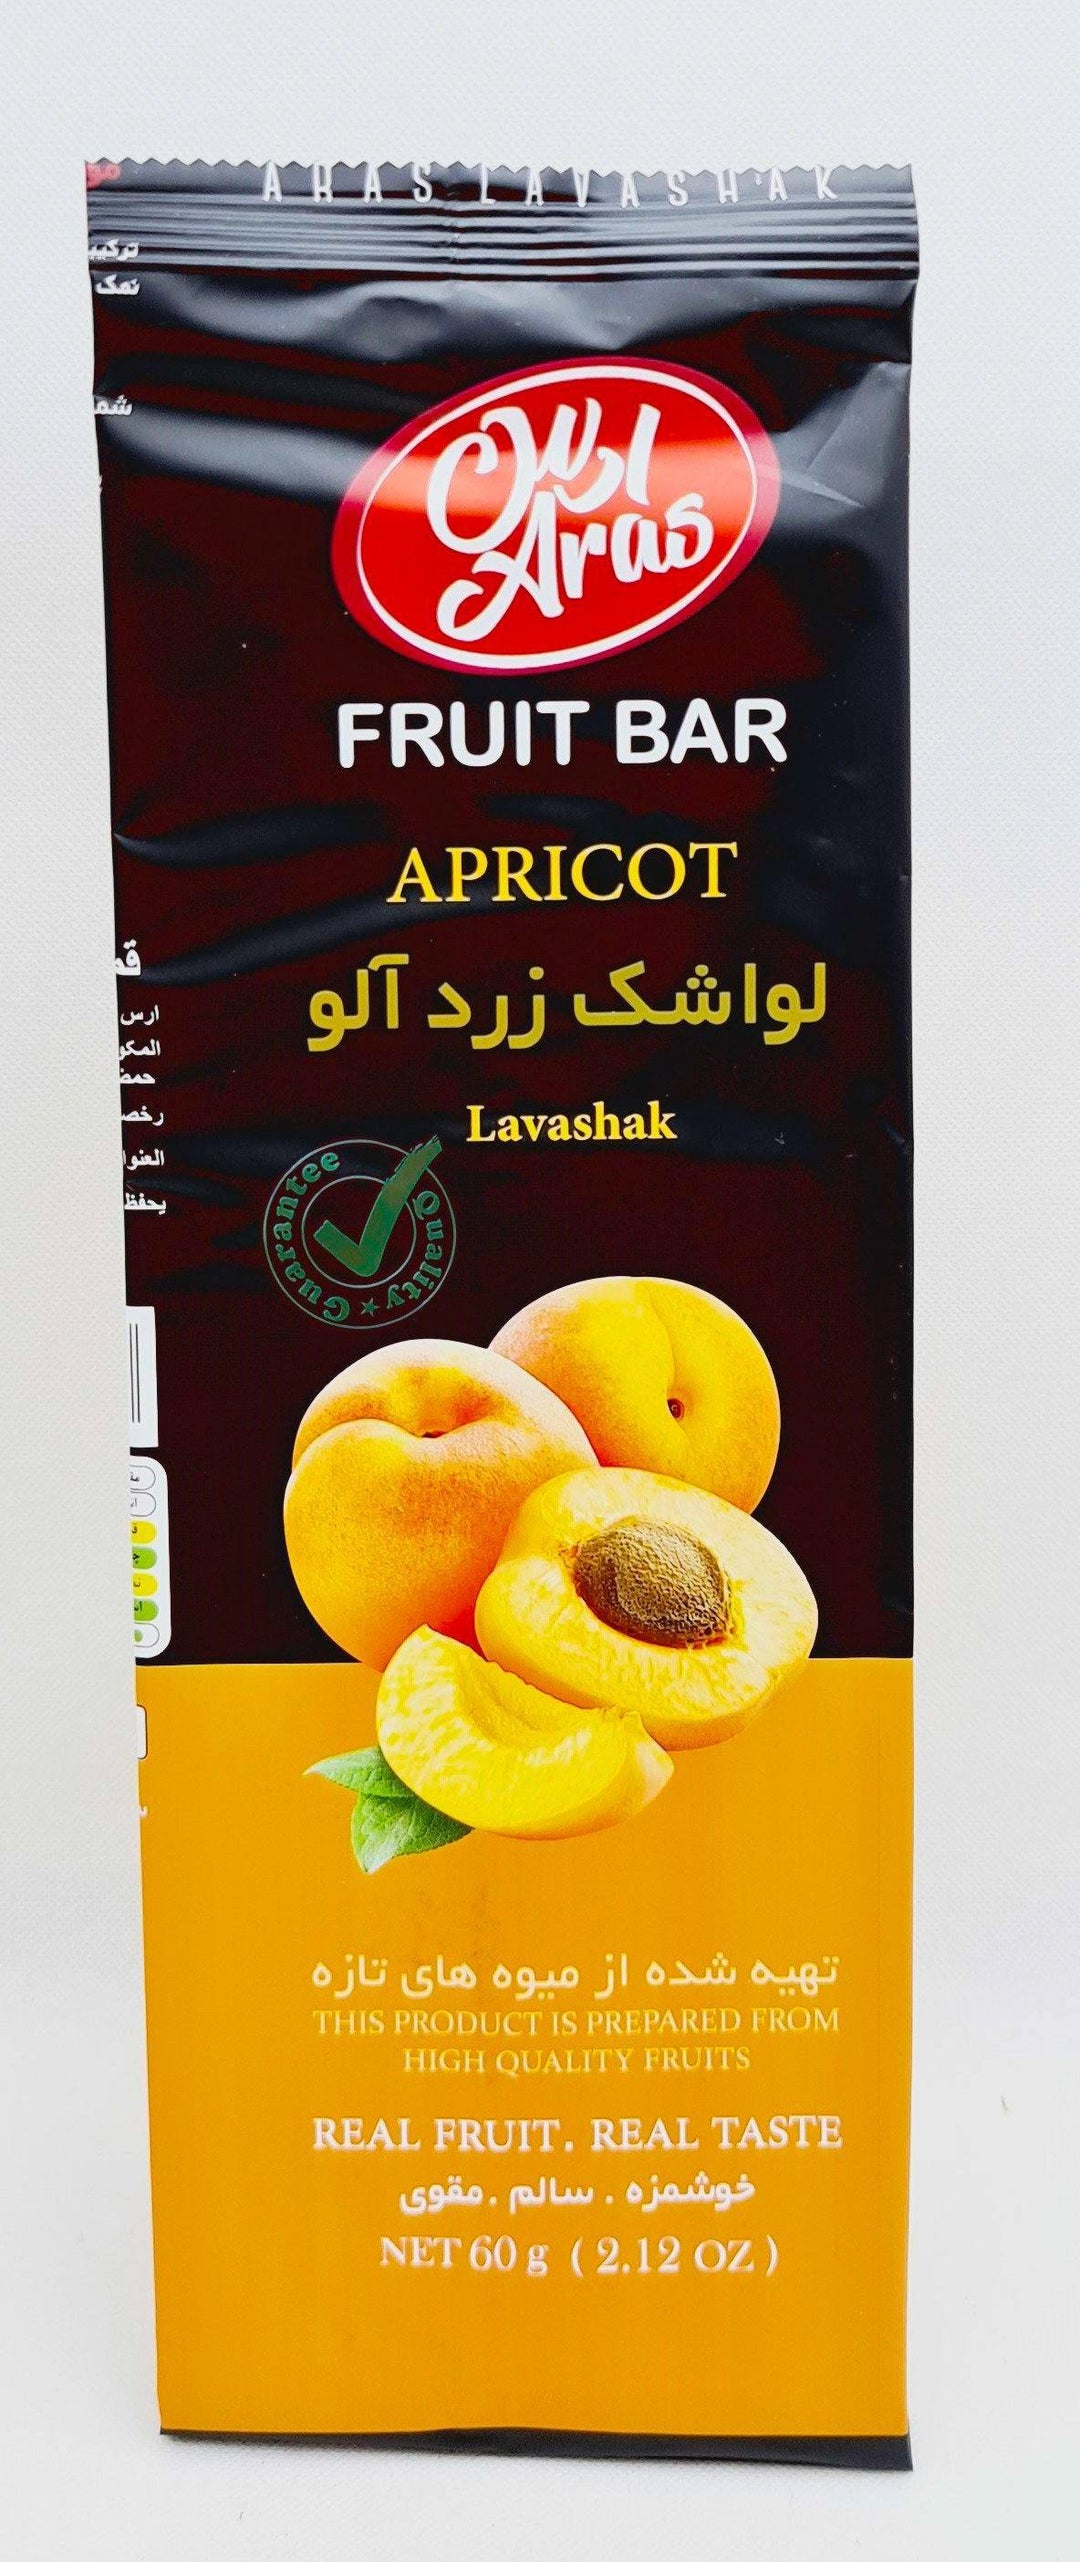 Aras Lavashak Zardalu - Aprikose Lavaschak 60g - Persienmarkt